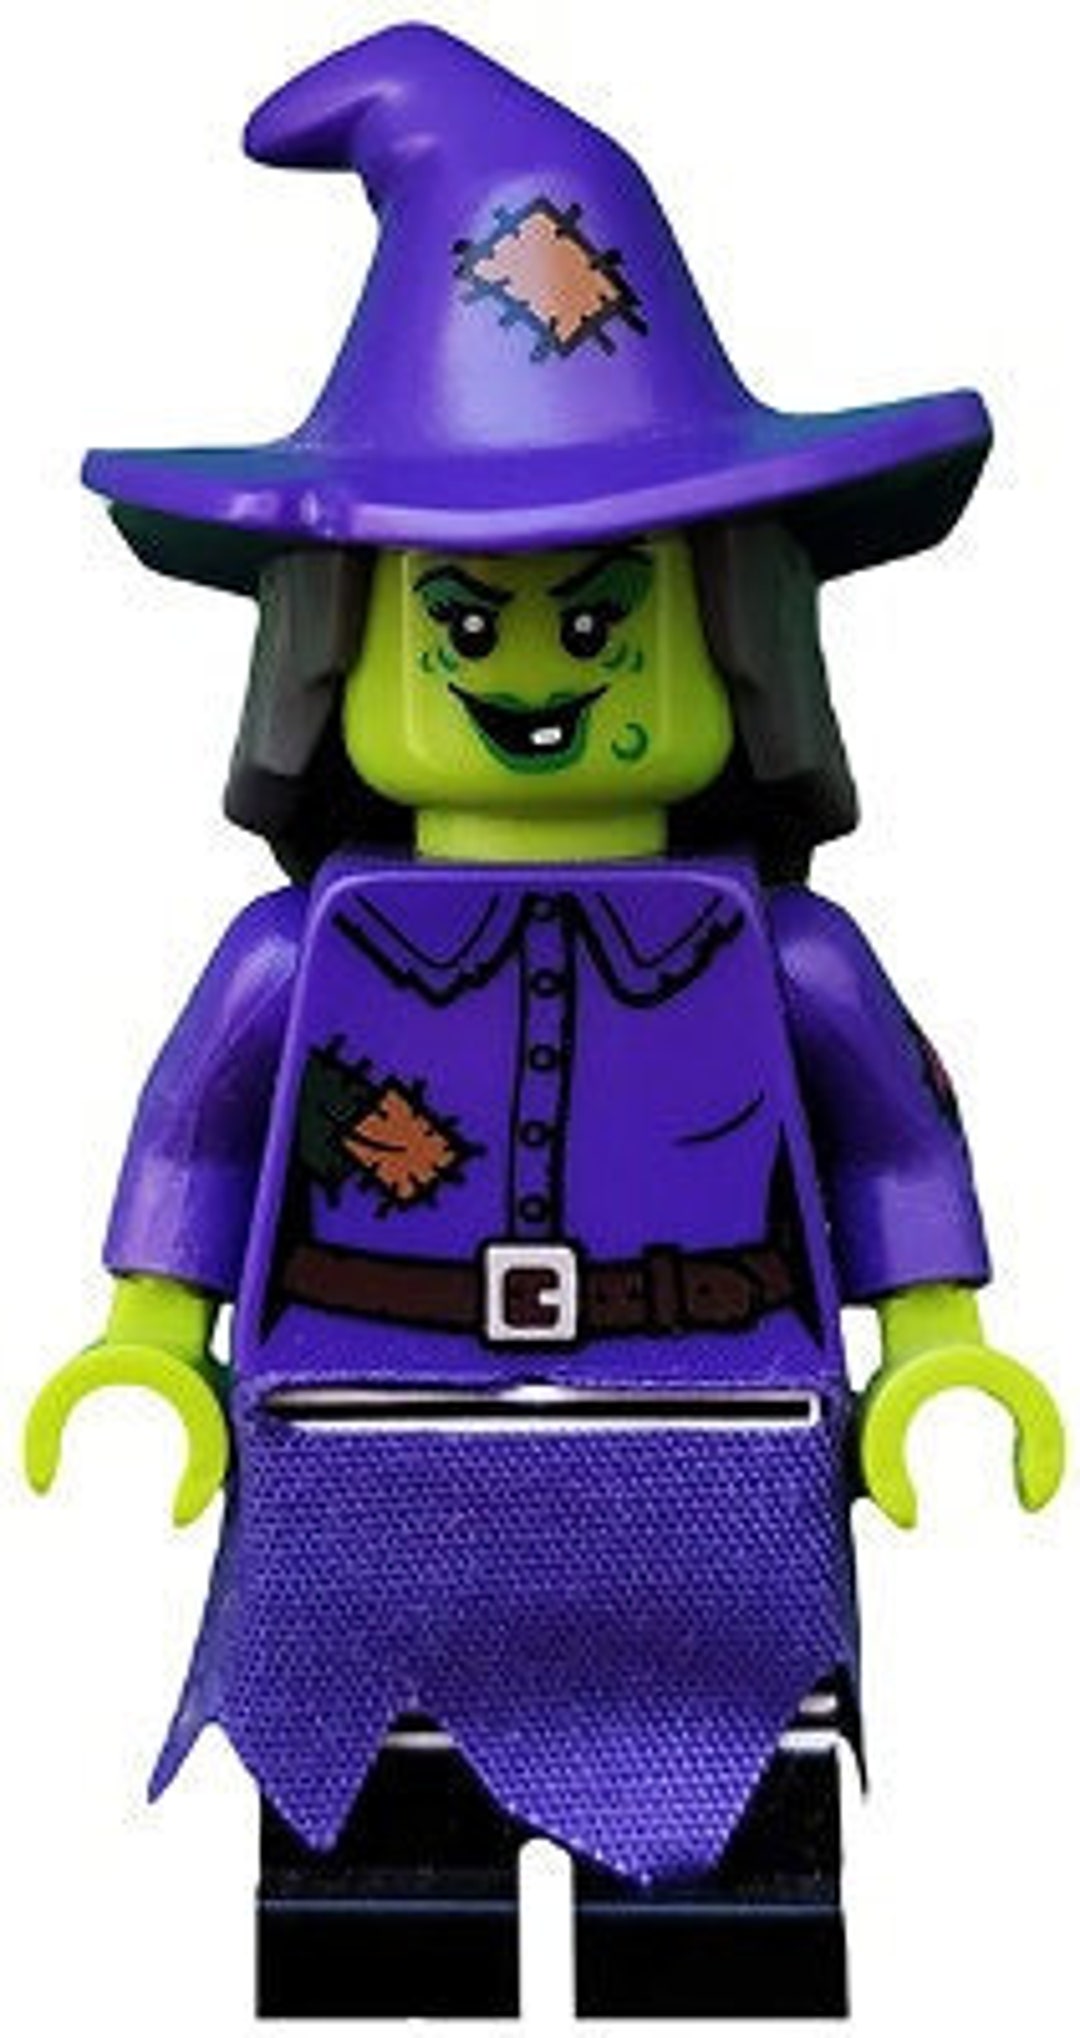 MINIFIGURE LEGO Halloween Wacky Witch W/ Purple Dress - Etsy